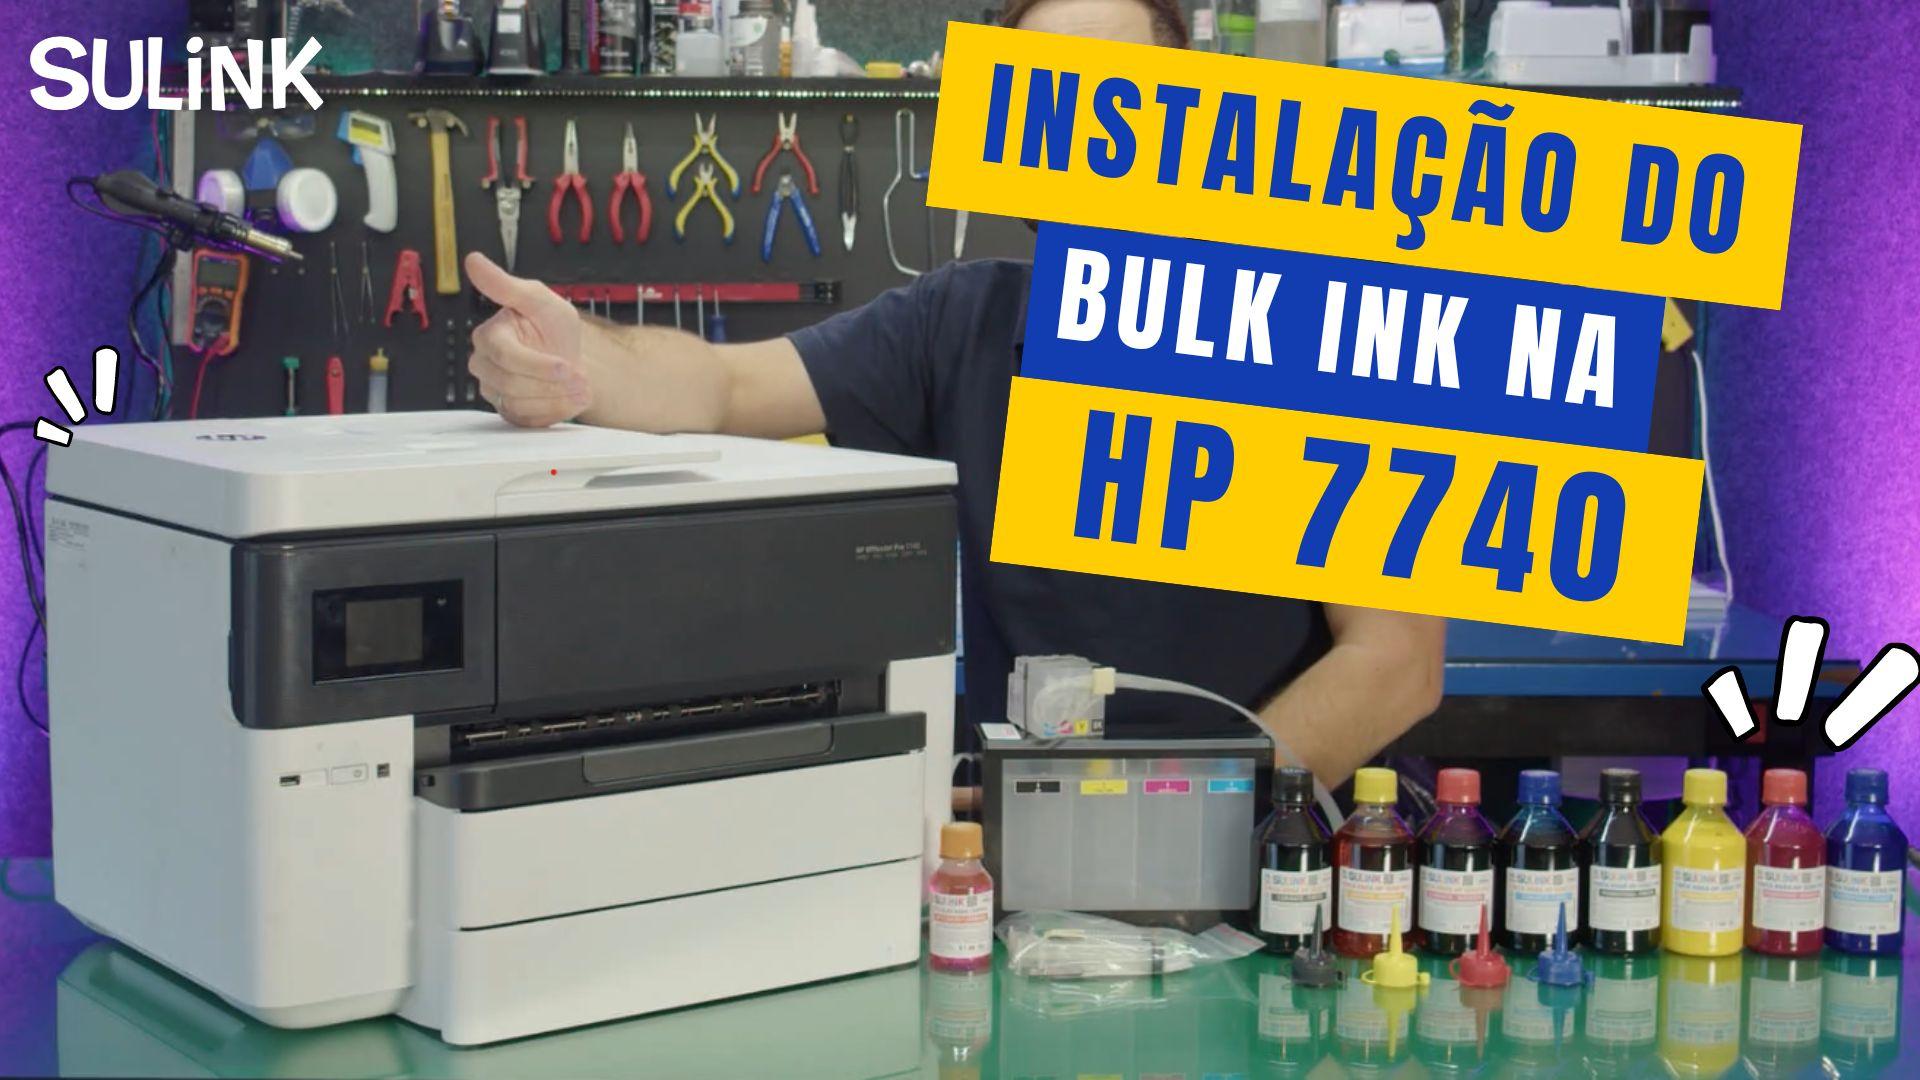 Manual Instalação Bulk Ink Impressora HP 7740 Desbloqueada ChipLess #sulink em SulinkPlus